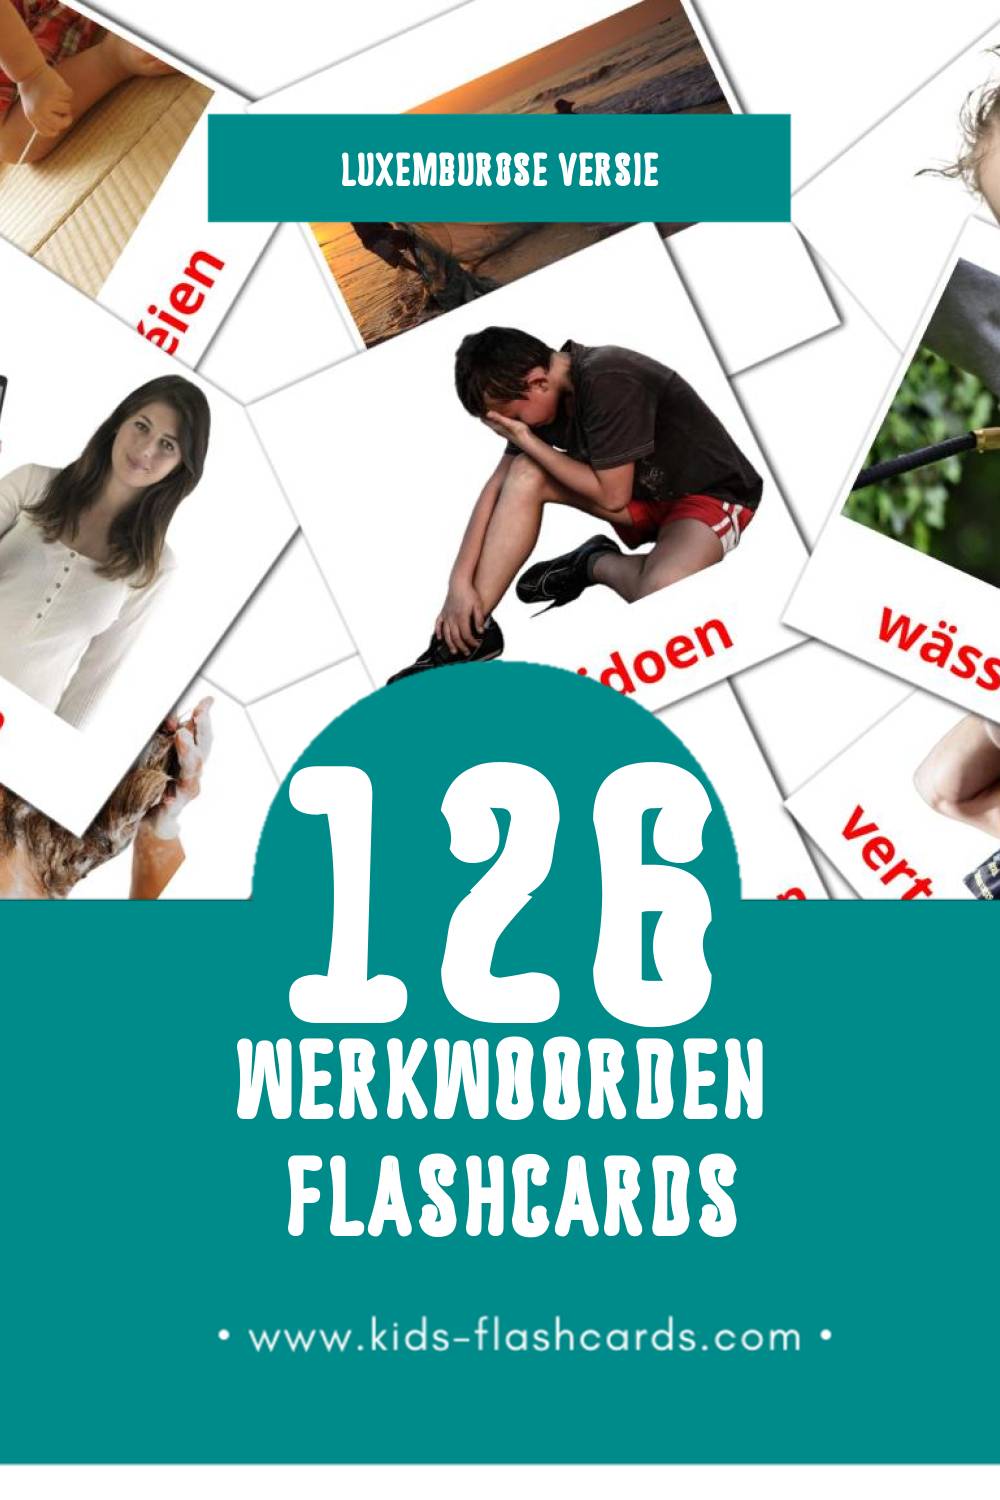 Visuele Verben Flashcards voor Kleuters (126 kaarten in het Luxemburgs)